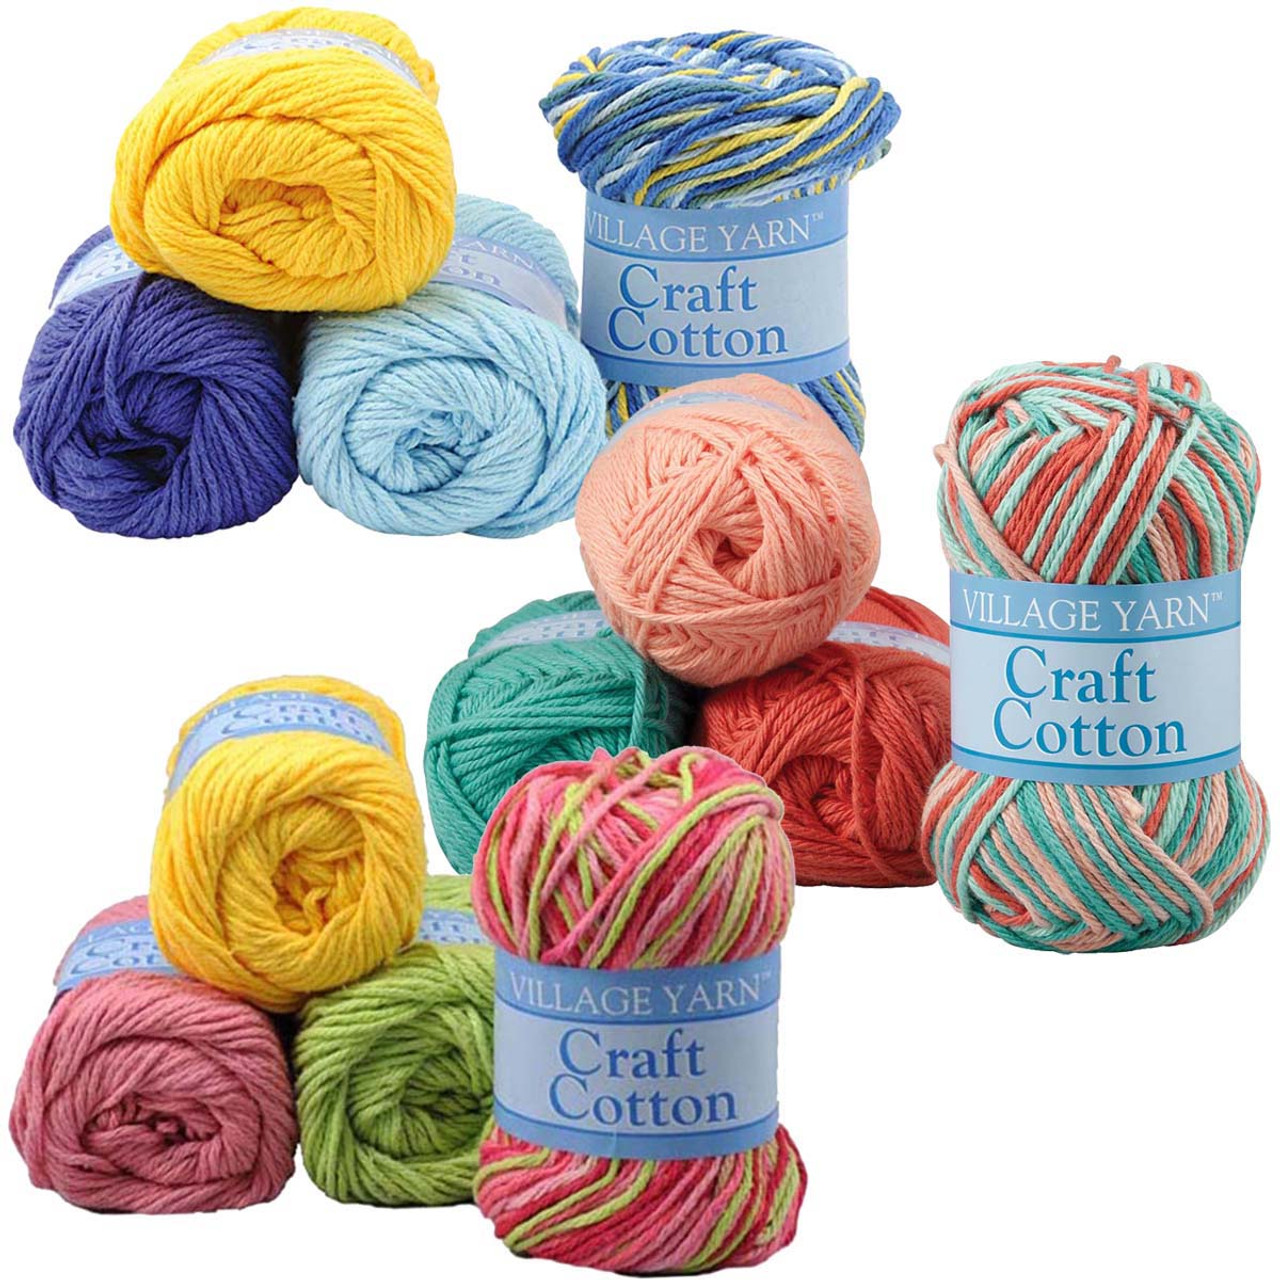 Easy Star Stitch Crochet Dishcloth Pattern - Life + Yarn